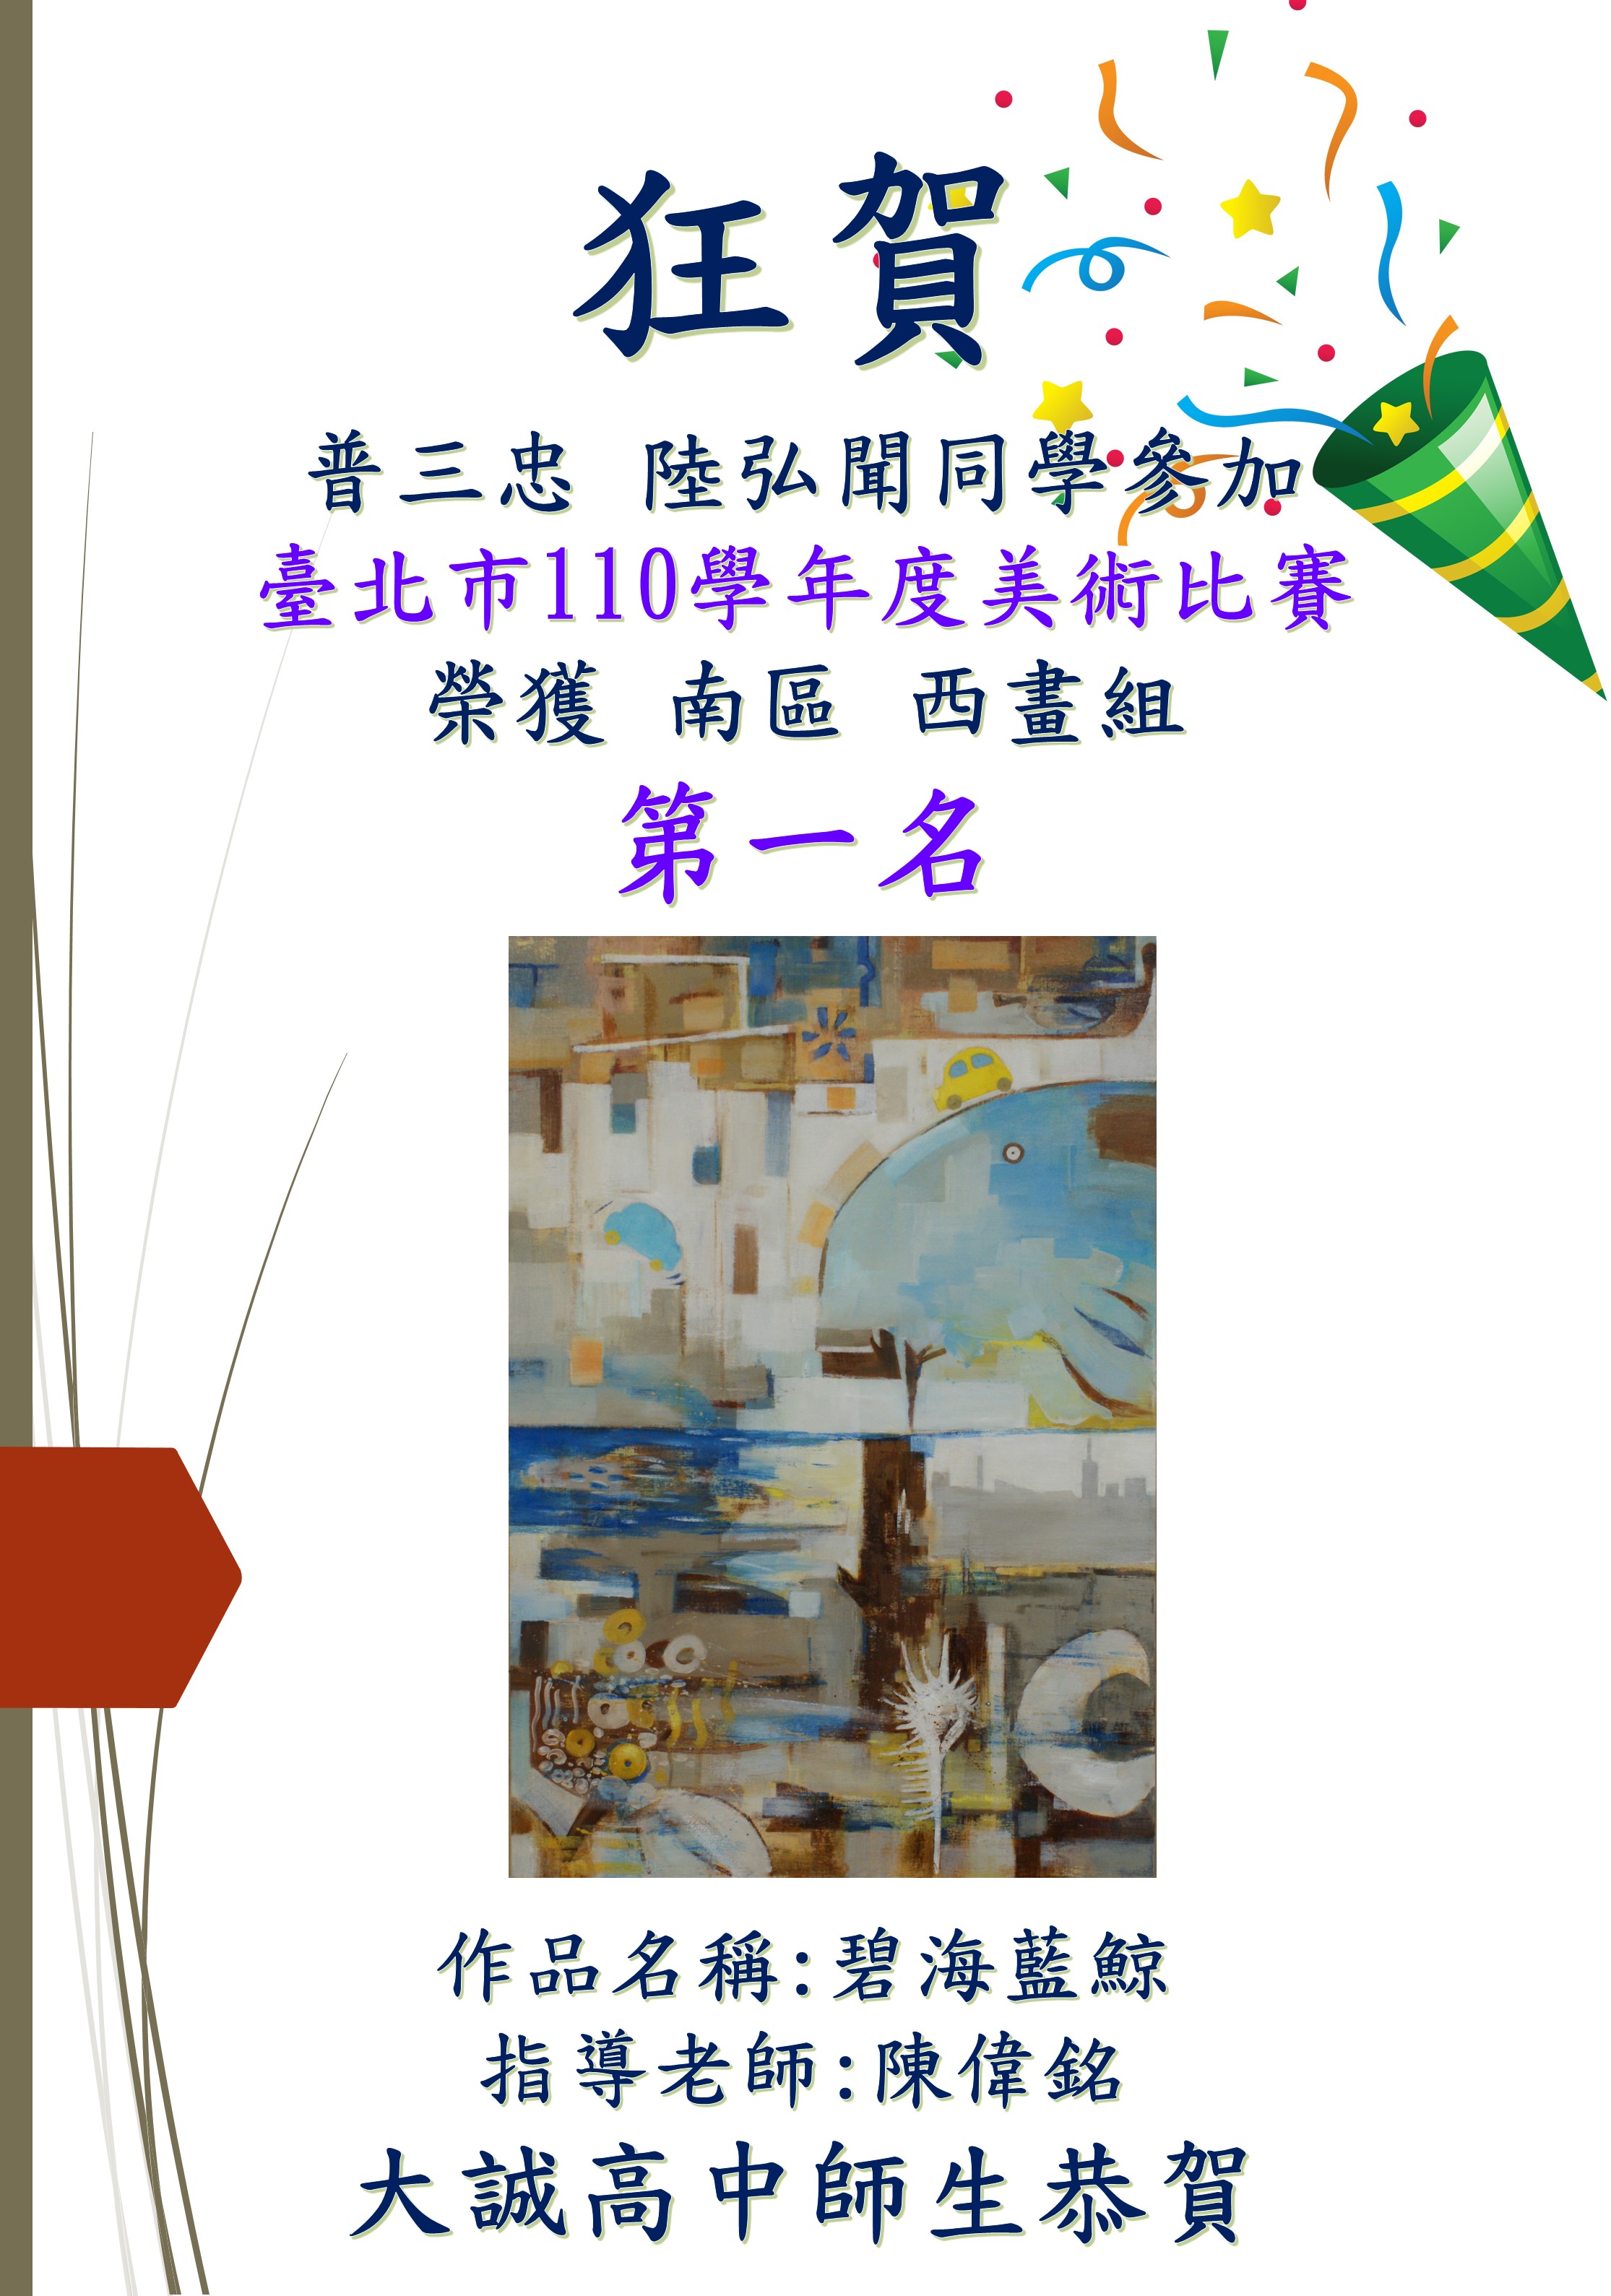 臺北市110學年度美術比賽榮獲南區西畫組第一名